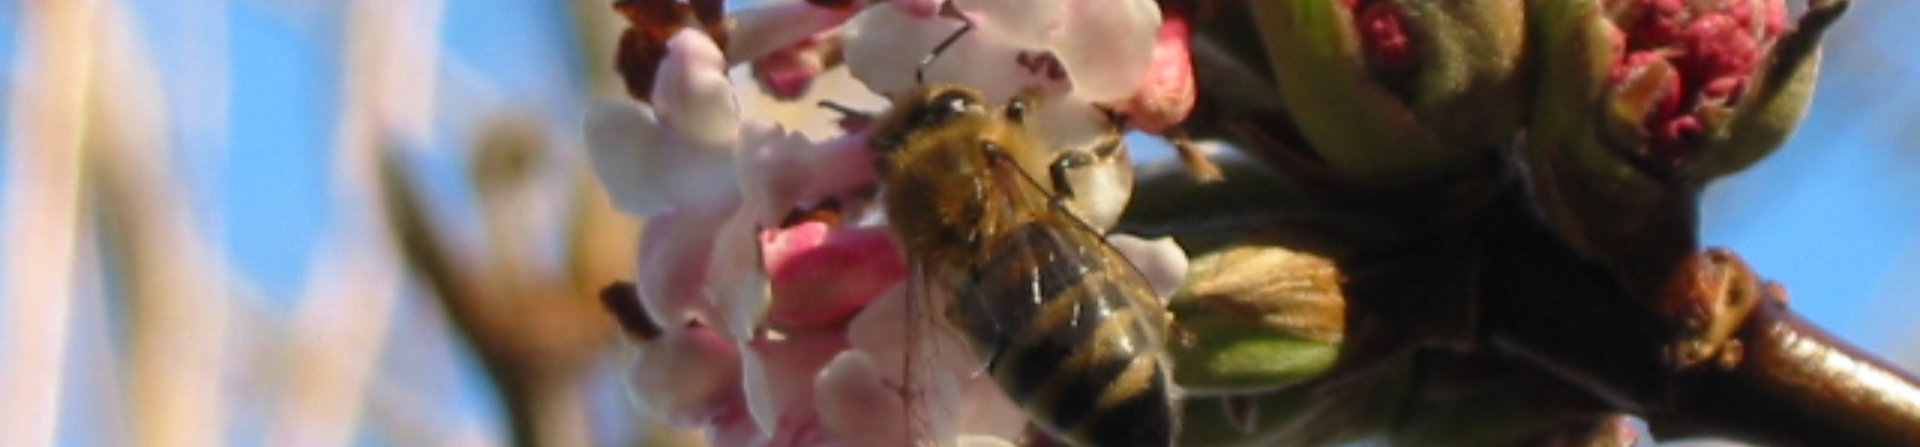 1920x447 Viburnum Blüte mit Biene 3.jpg